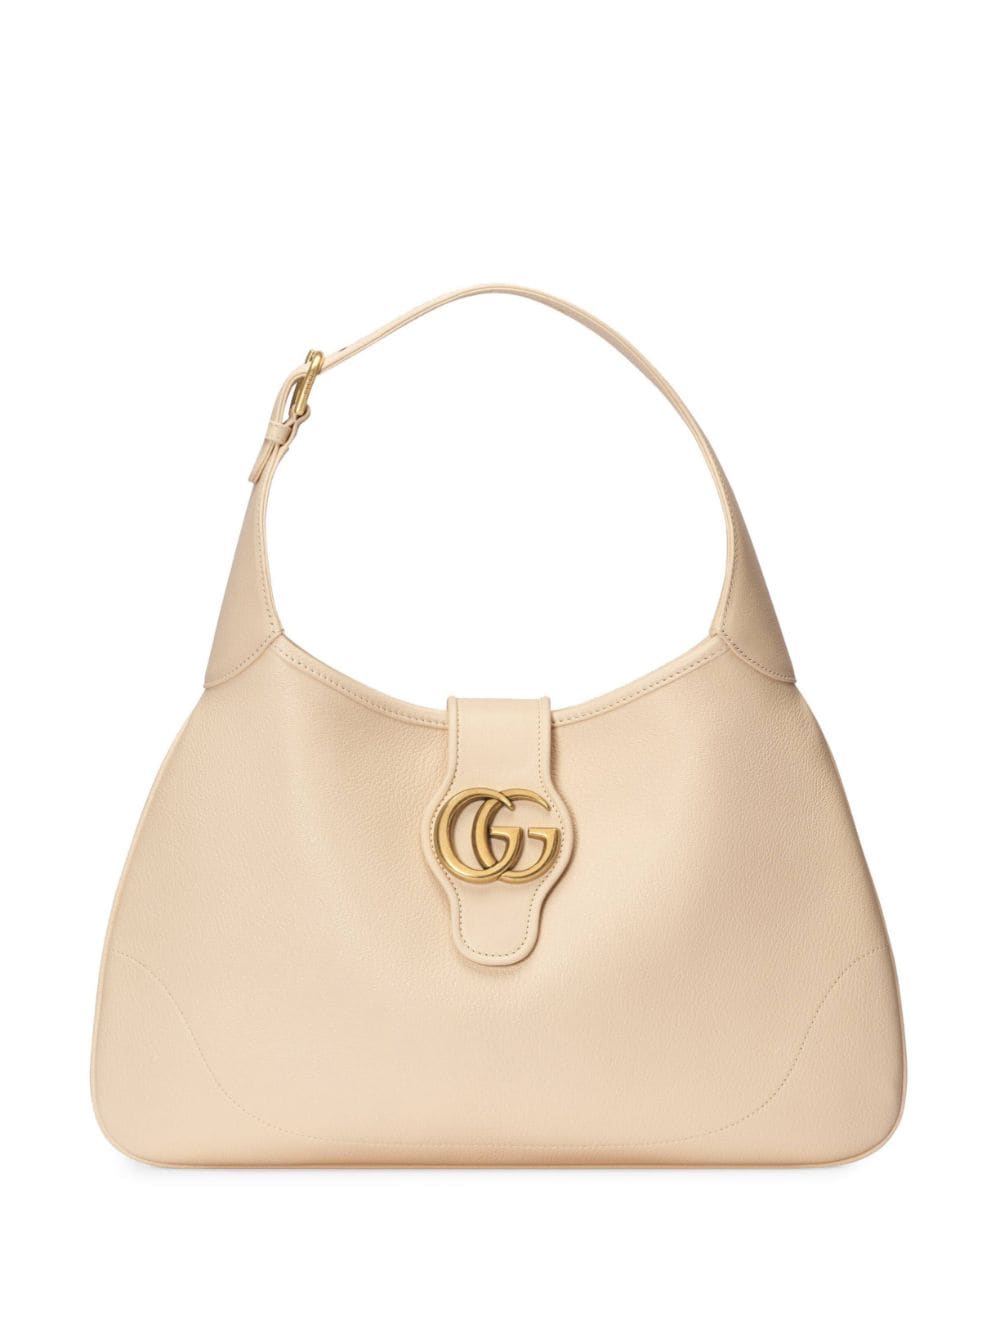 Gucci Aphrodite Embellished Leather Shoulder Bag - Cream - One Size